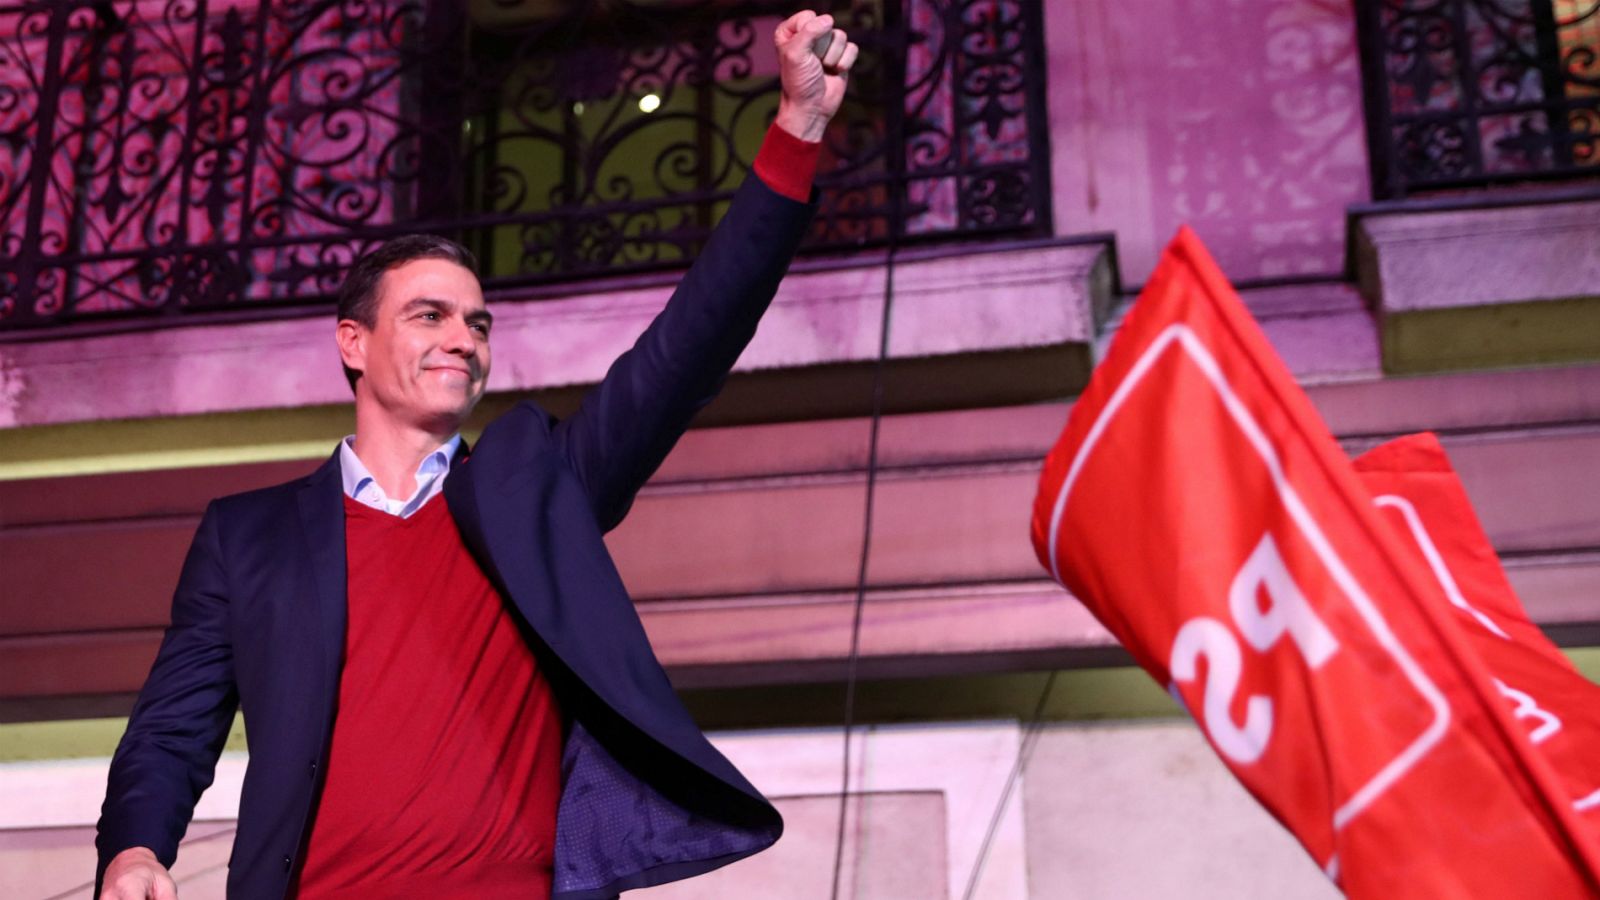 Elecciones generales Pedro Sánchez | El PSOE pide "responsabilidad" a los partidos para desbloquear el Gobierno: "Esta vez sí que sí" - RTVE.es